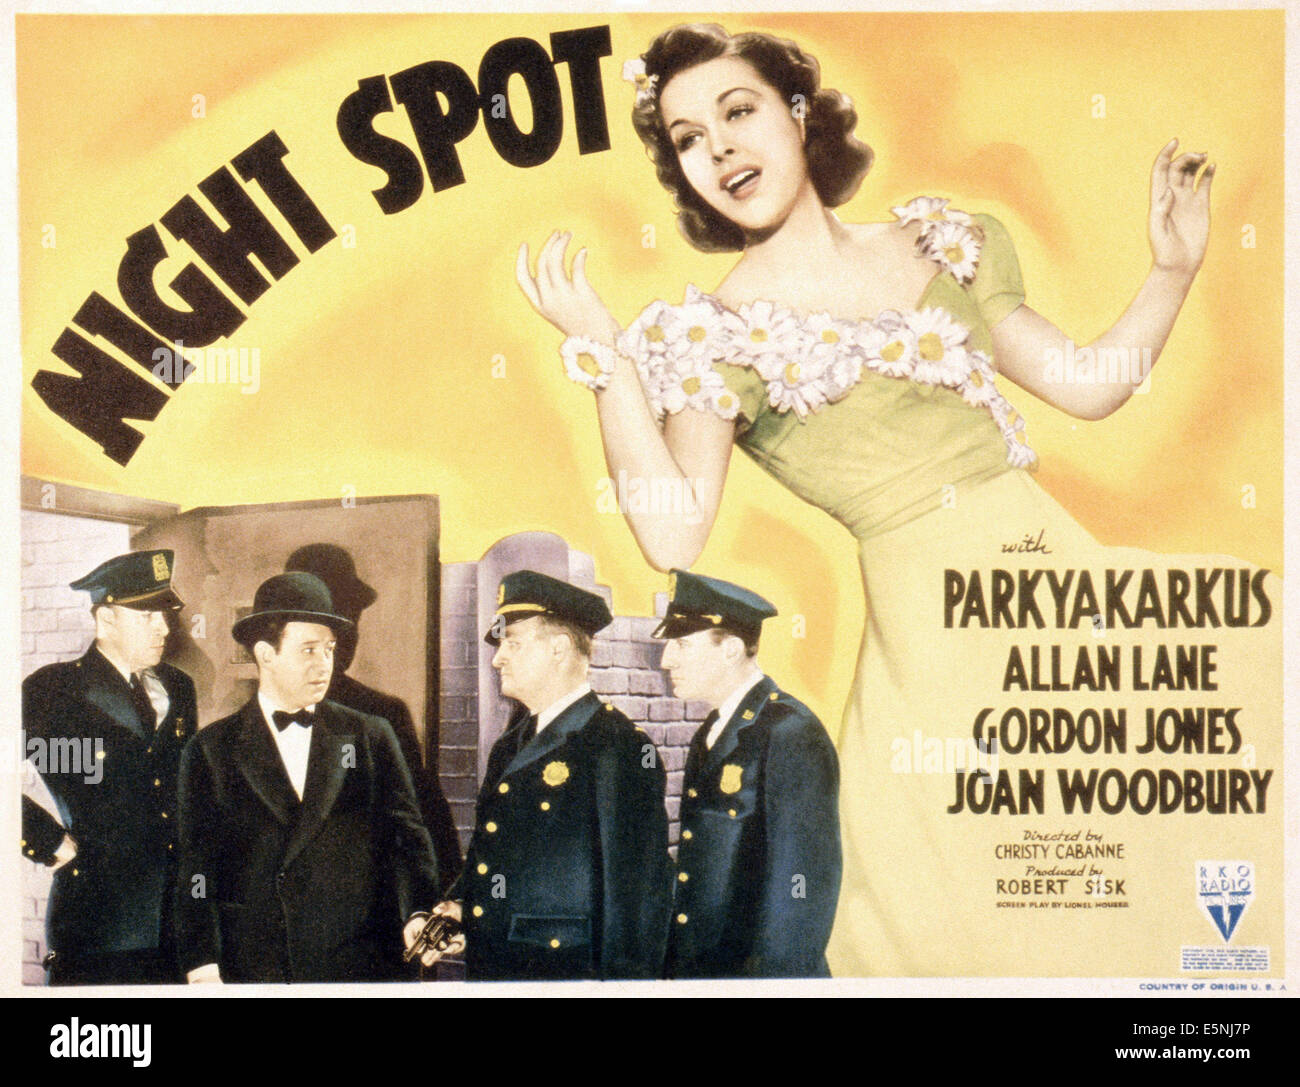 Nacht vor Ort, US-Plakat, Parkyakarkus (zweiter von links), Joan Woodbury (rechts), 1938 Stockfoto